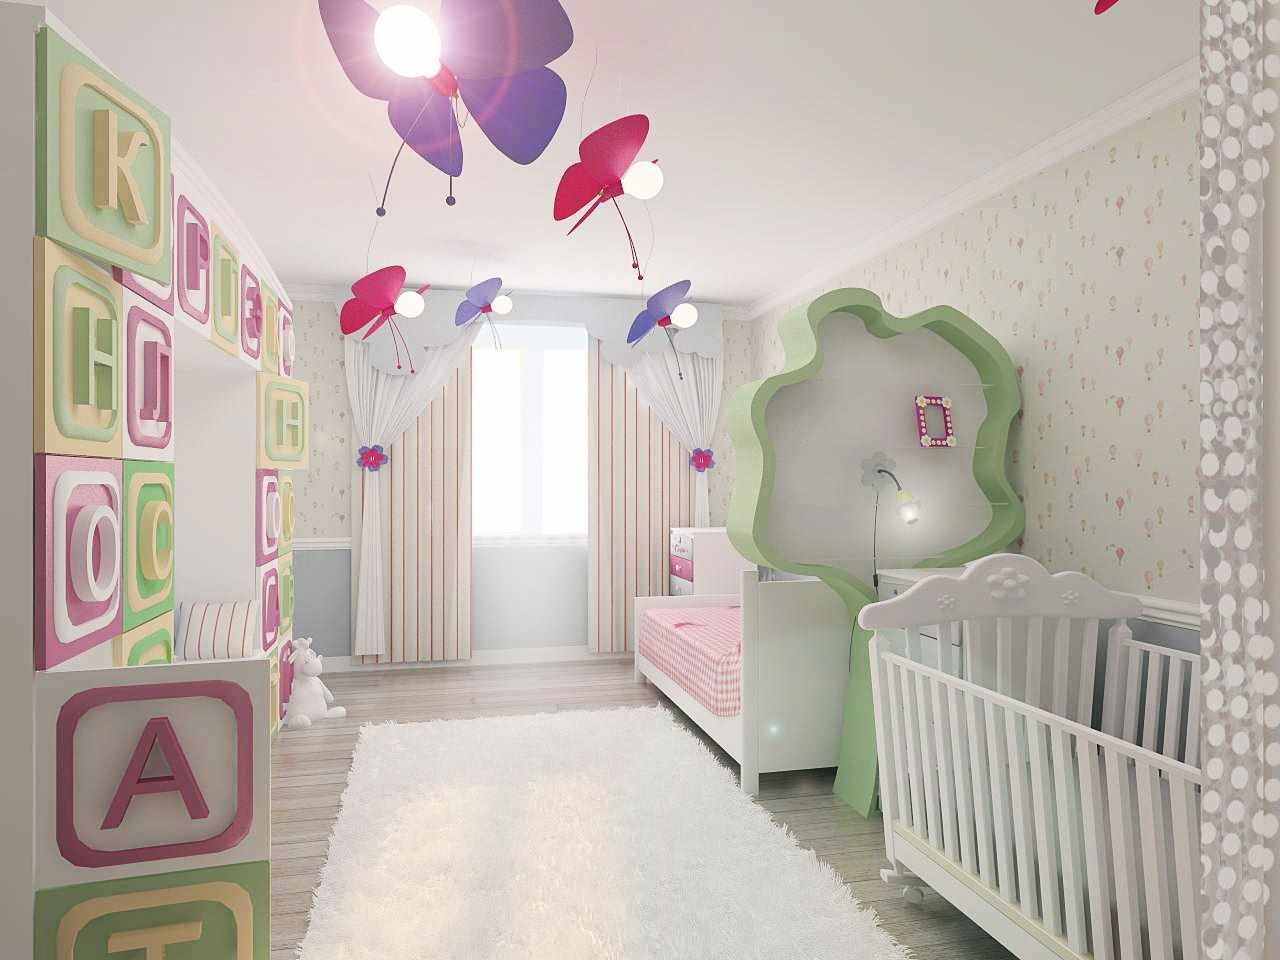 ideea unui stil frumos al unei camere pentru copii